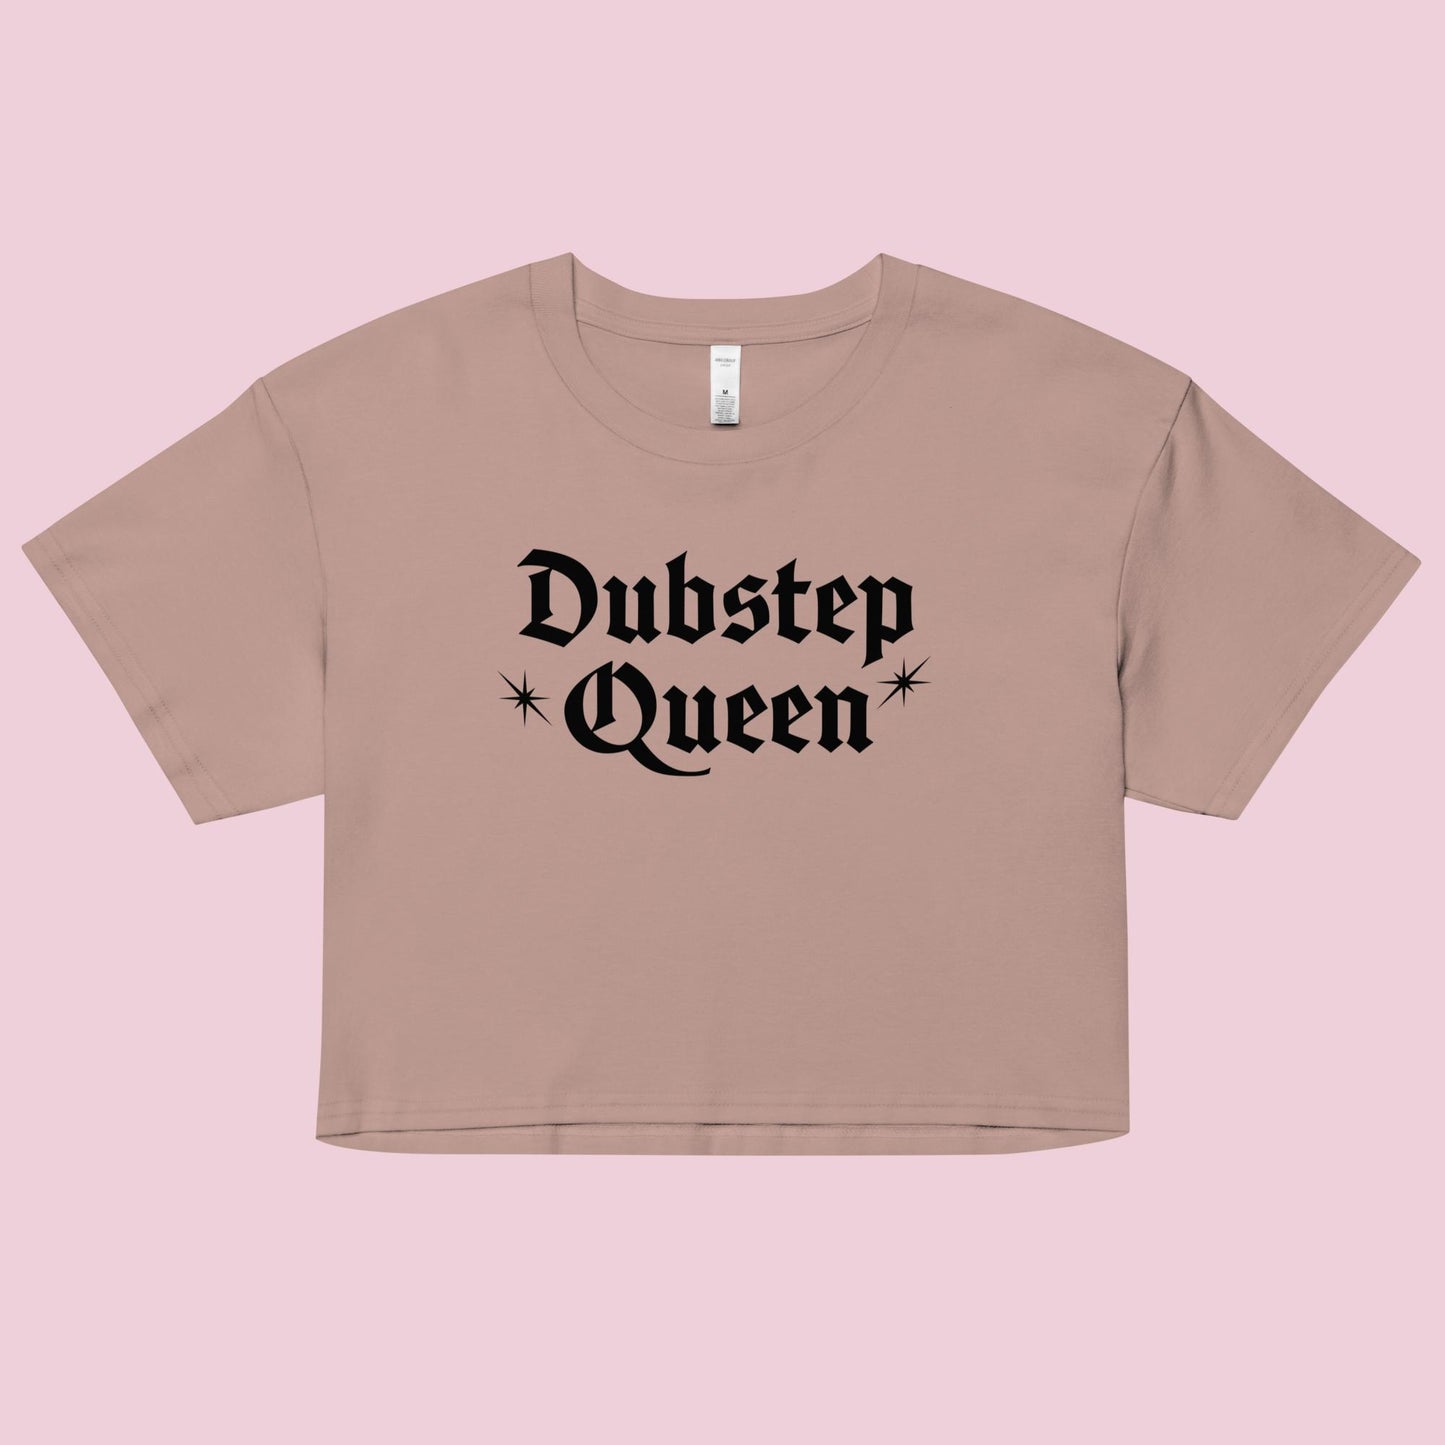 Dubstep Queen Women’s Boxy Crop Top